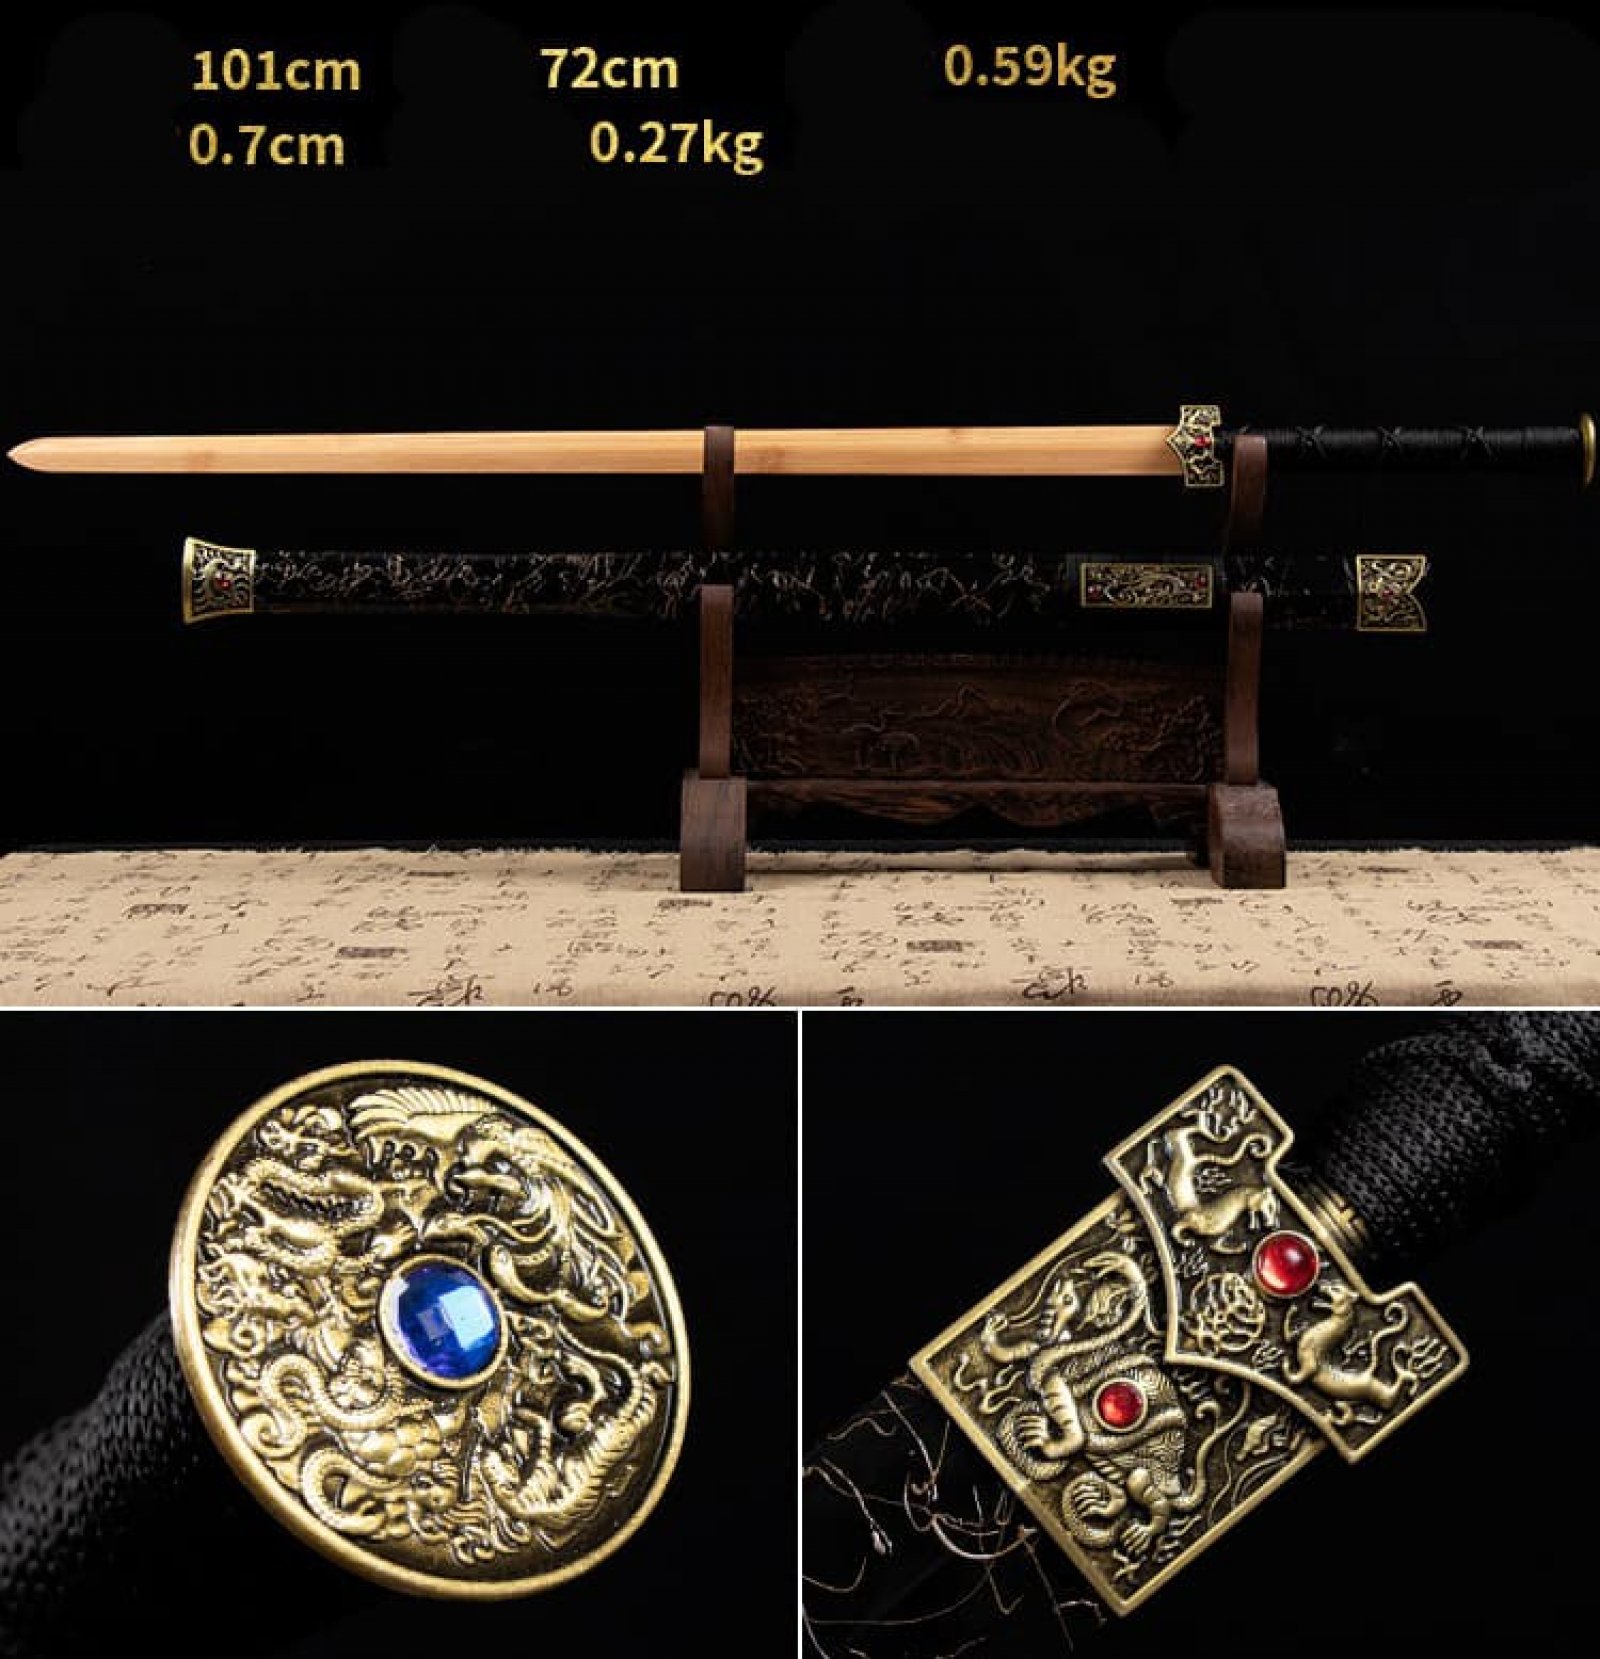 Kiếm gỗ thẳng Nhật Bản vỏ kiếm đá sapphire có tsuba chắn kiếm 016